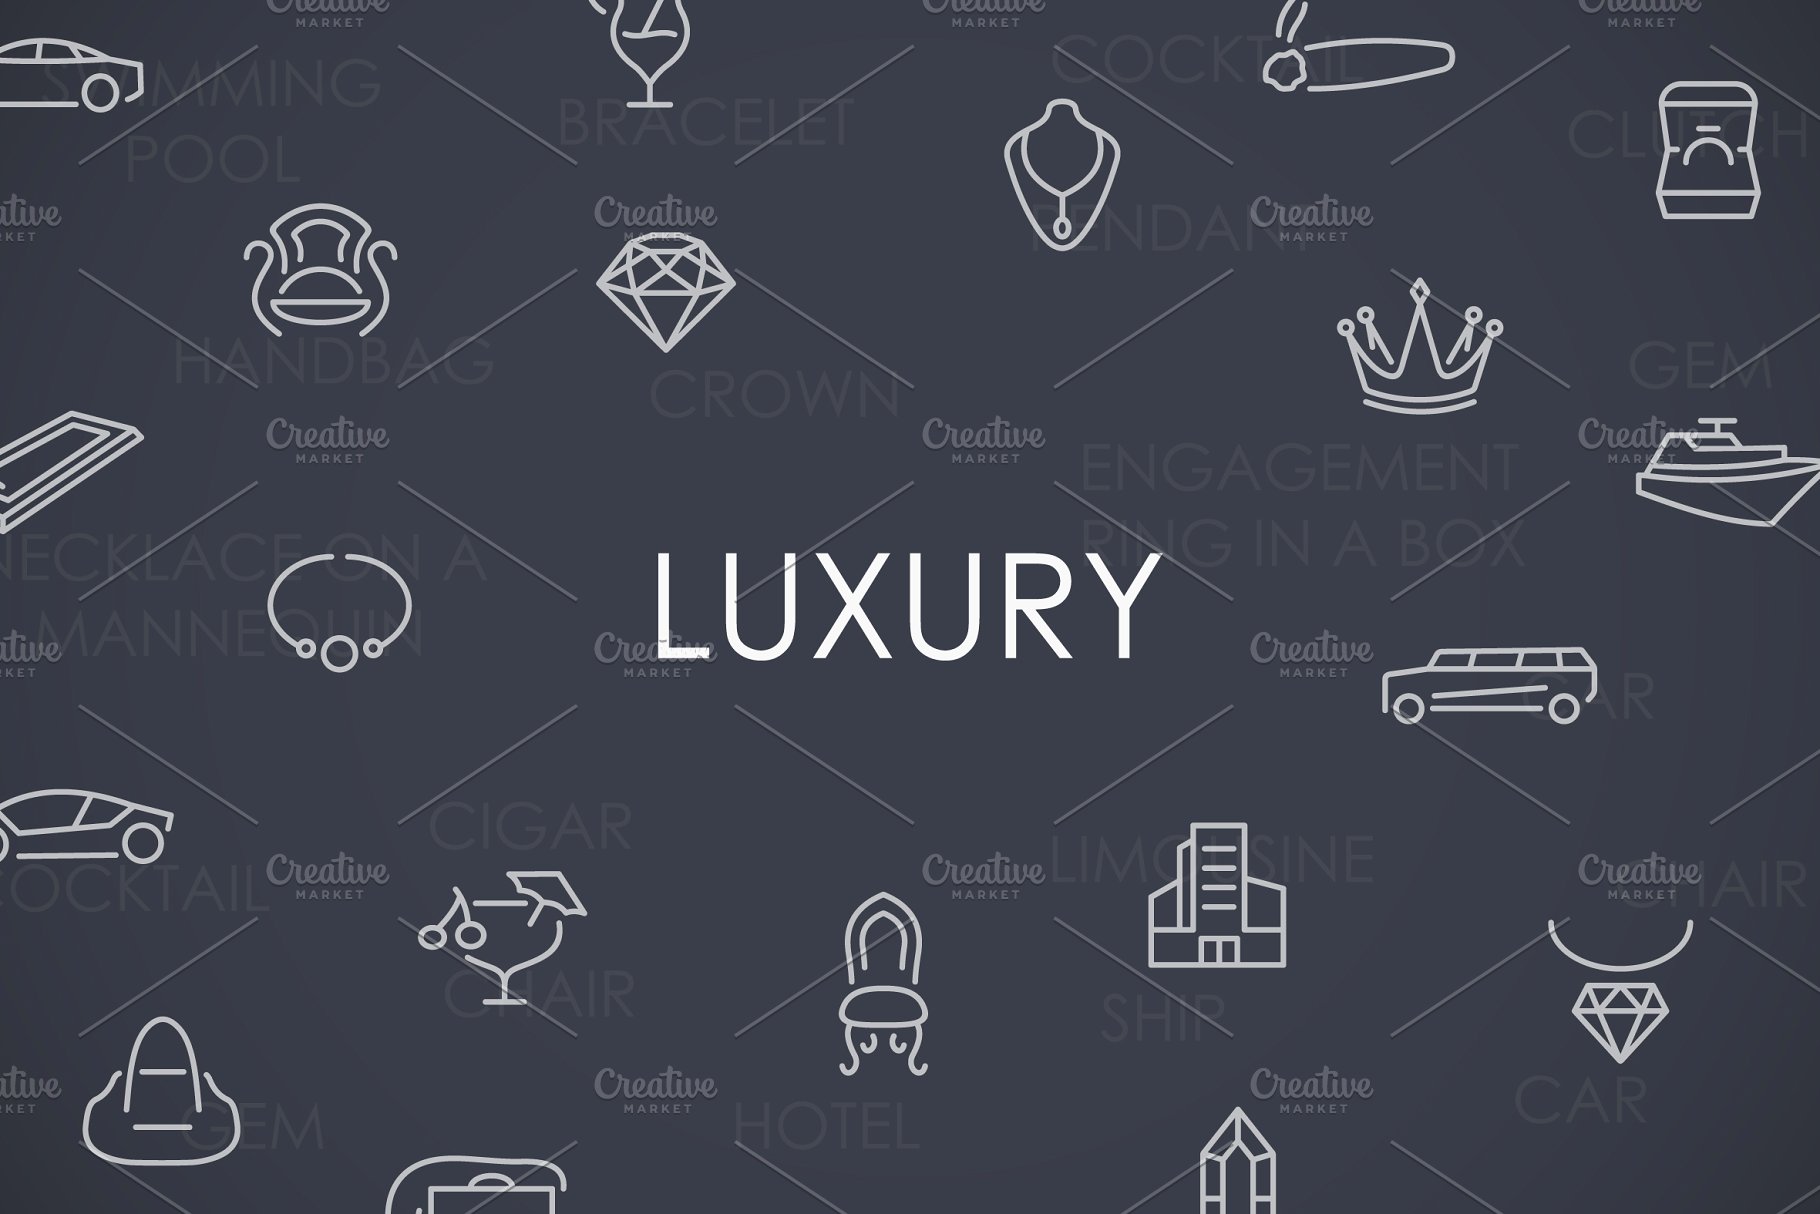 奢华矢量图标下载 Luxury thinline icons